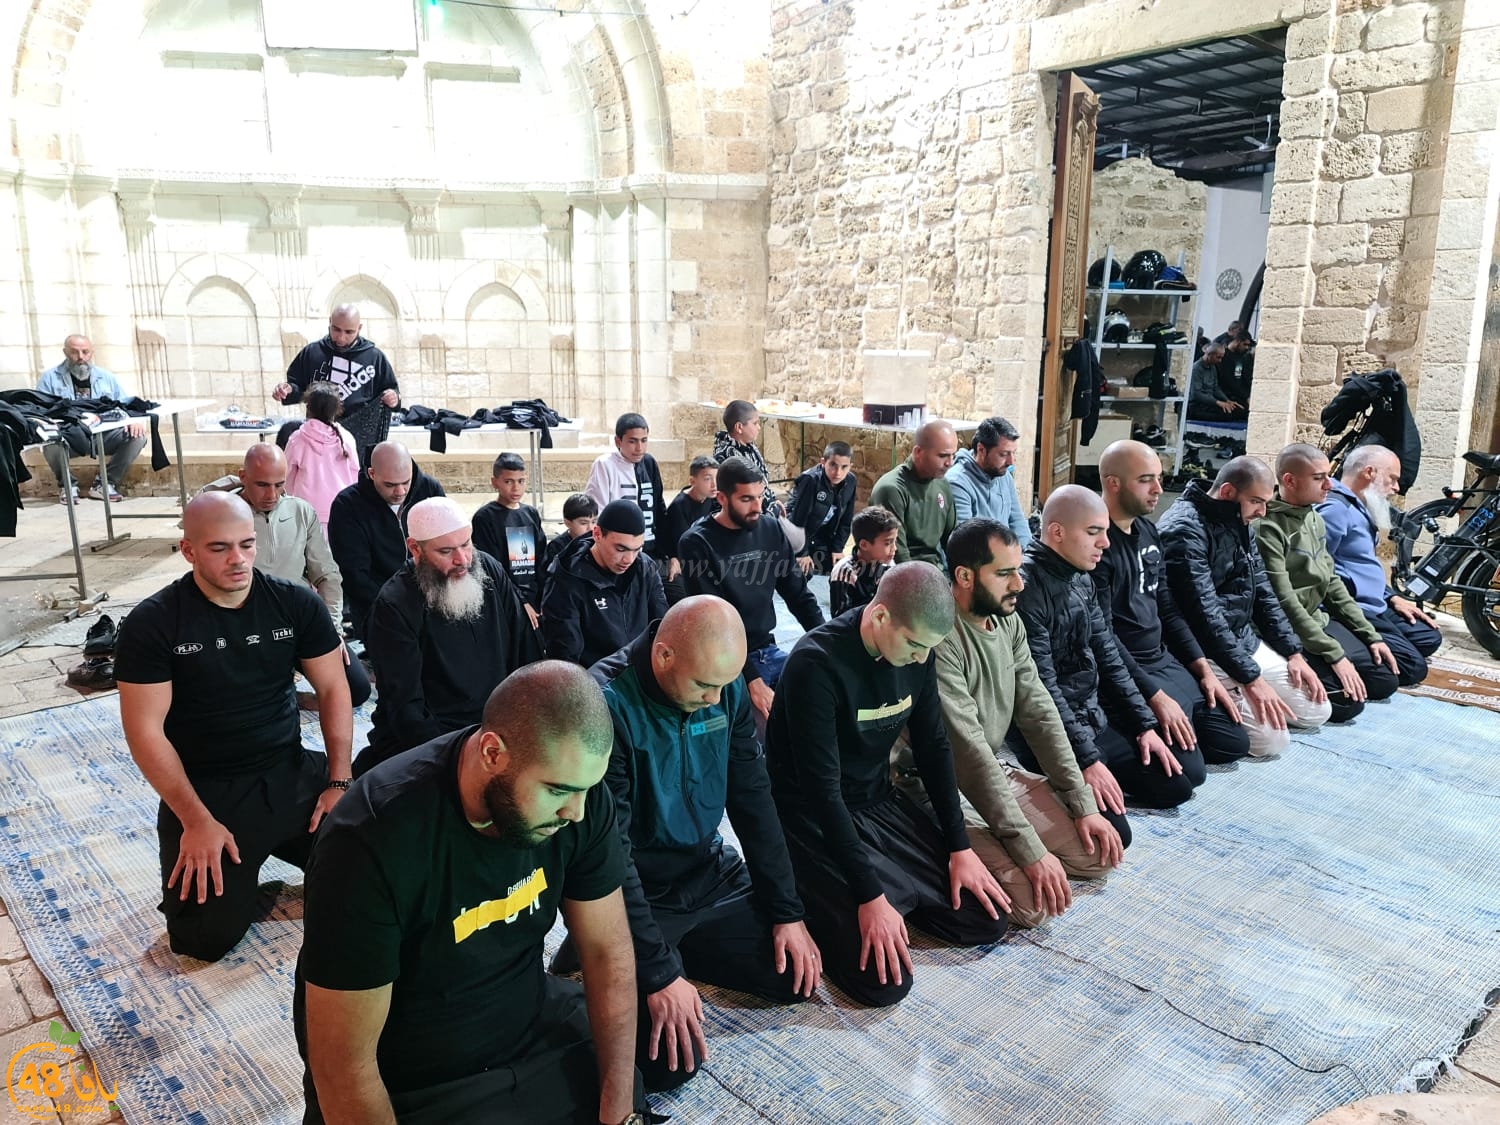  يافا: توزيع قمصان على المصلين في مسجد السكسك بمناسبة رمضان 